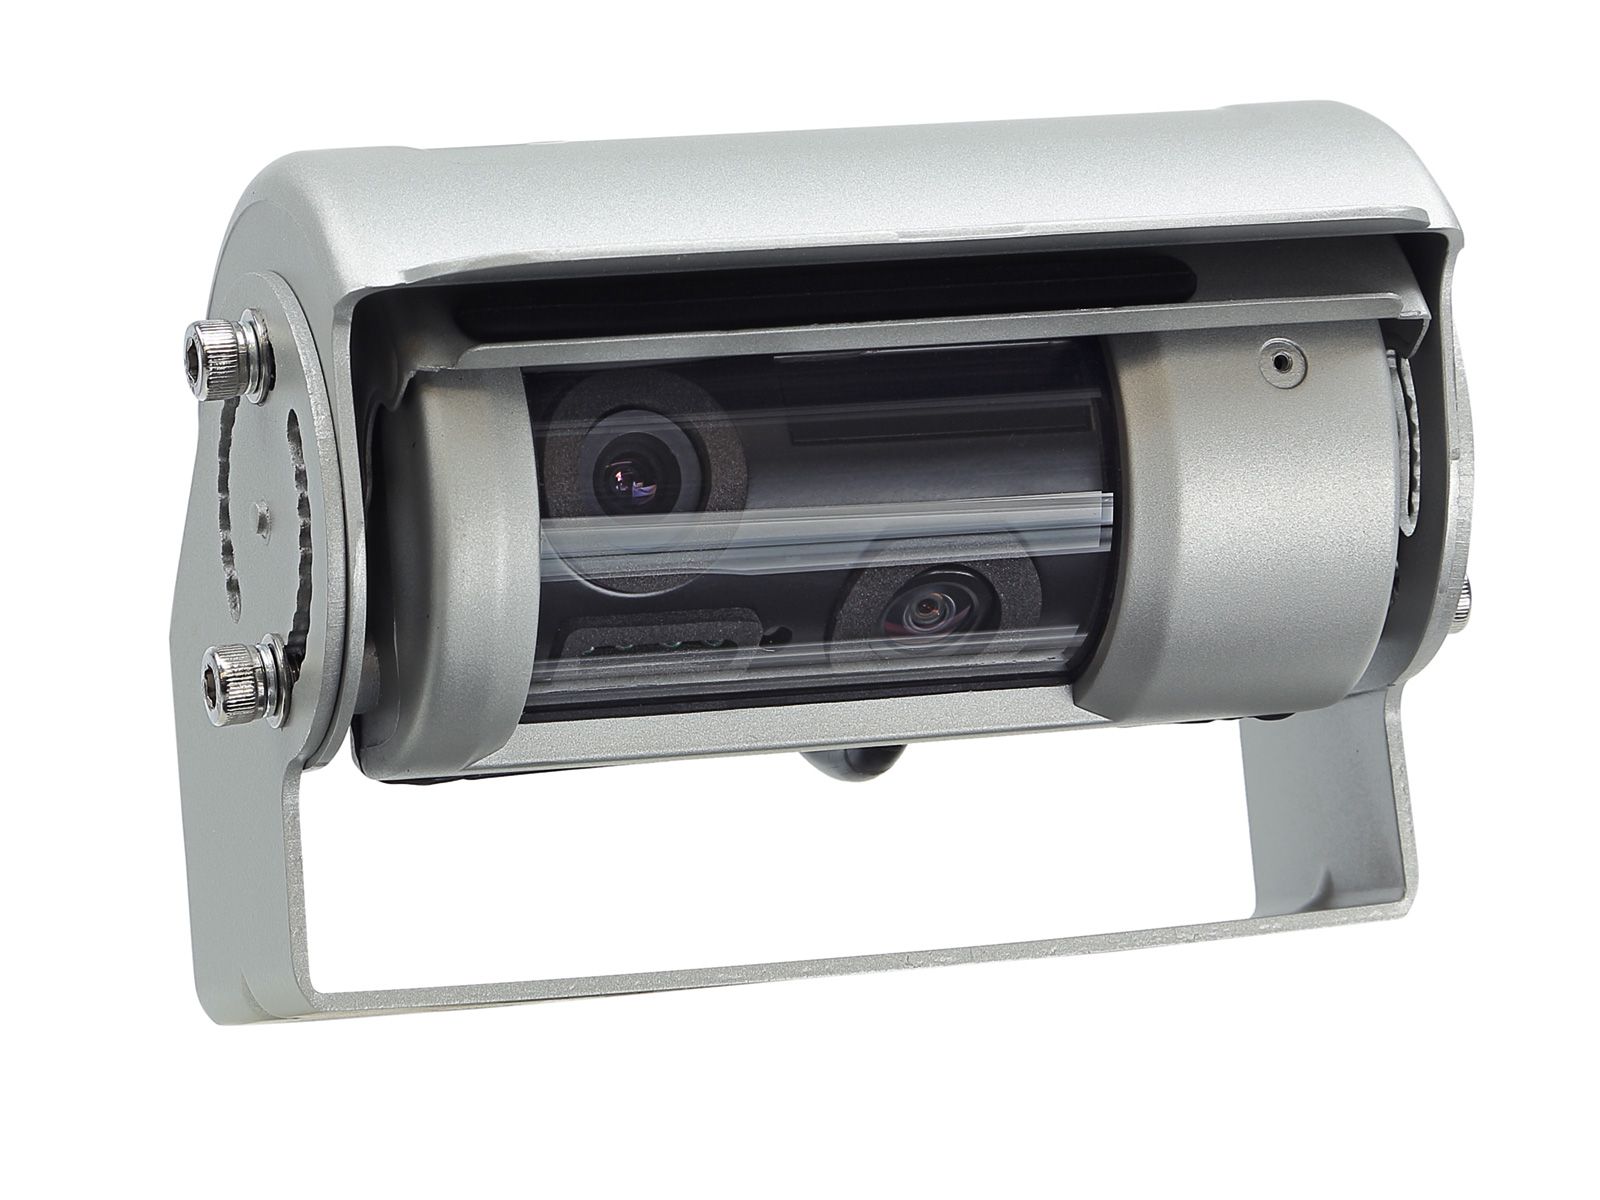 ACV Doppelshutter Rückfahrkamera universal zum Aufbau, 2 Kameralinsen, Kameraheizung